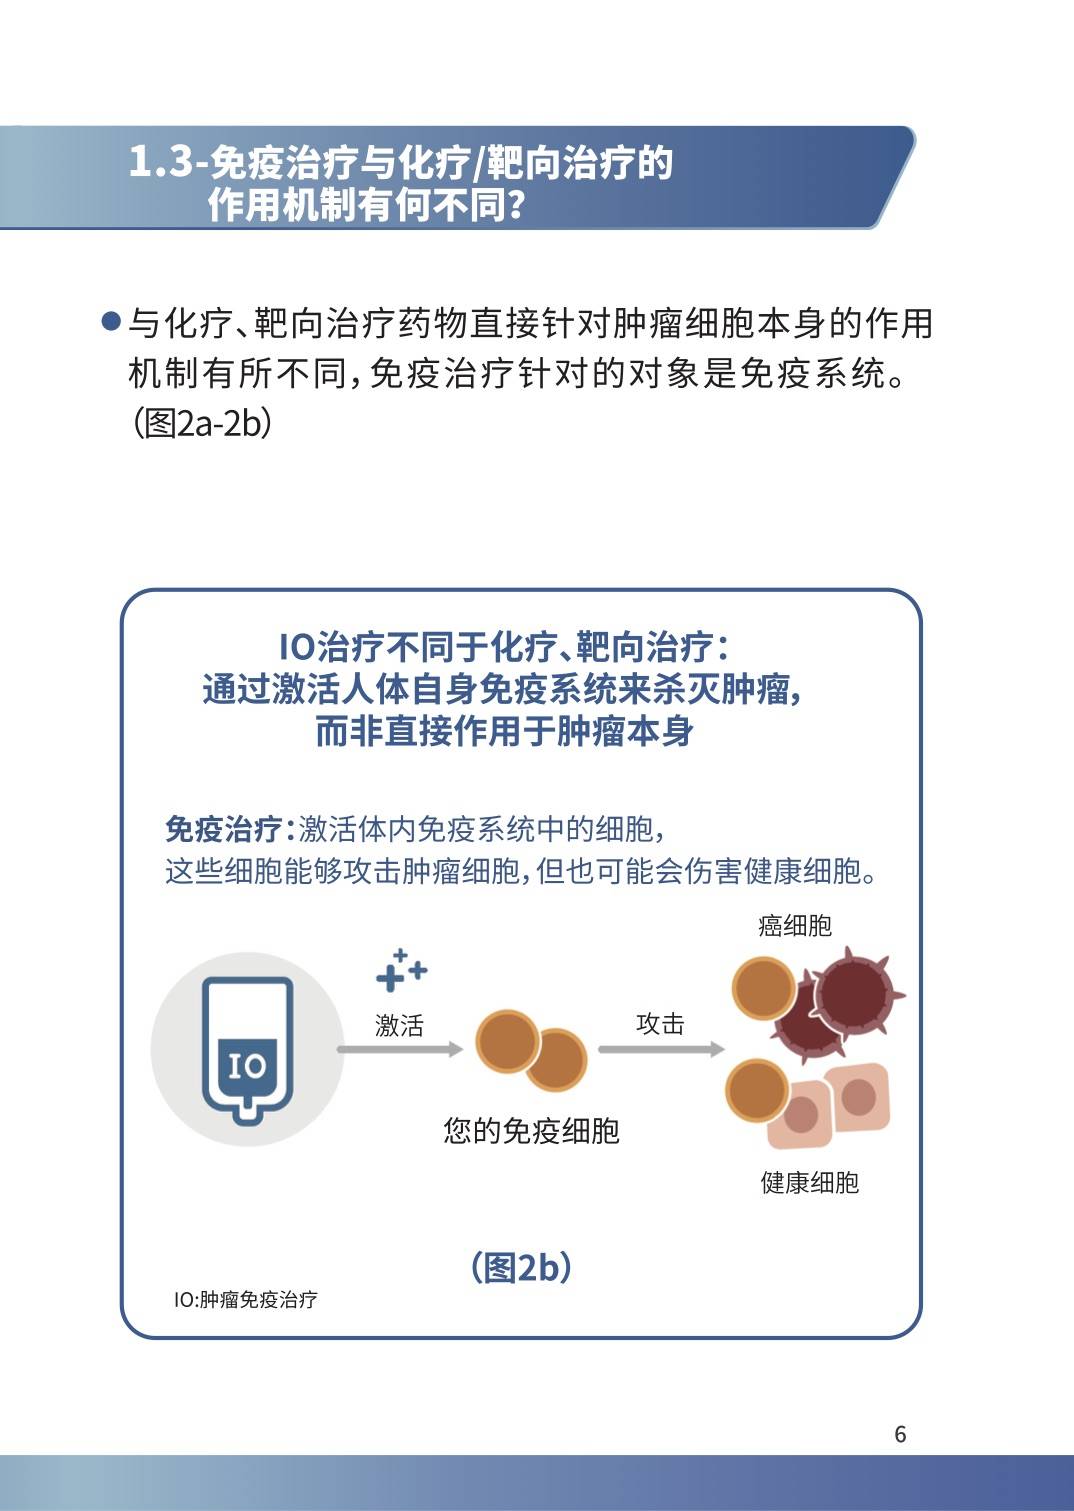 肿瘤宣传周科普系列之一-徐州市疾病预防控制中心（徐州市健康教育所）